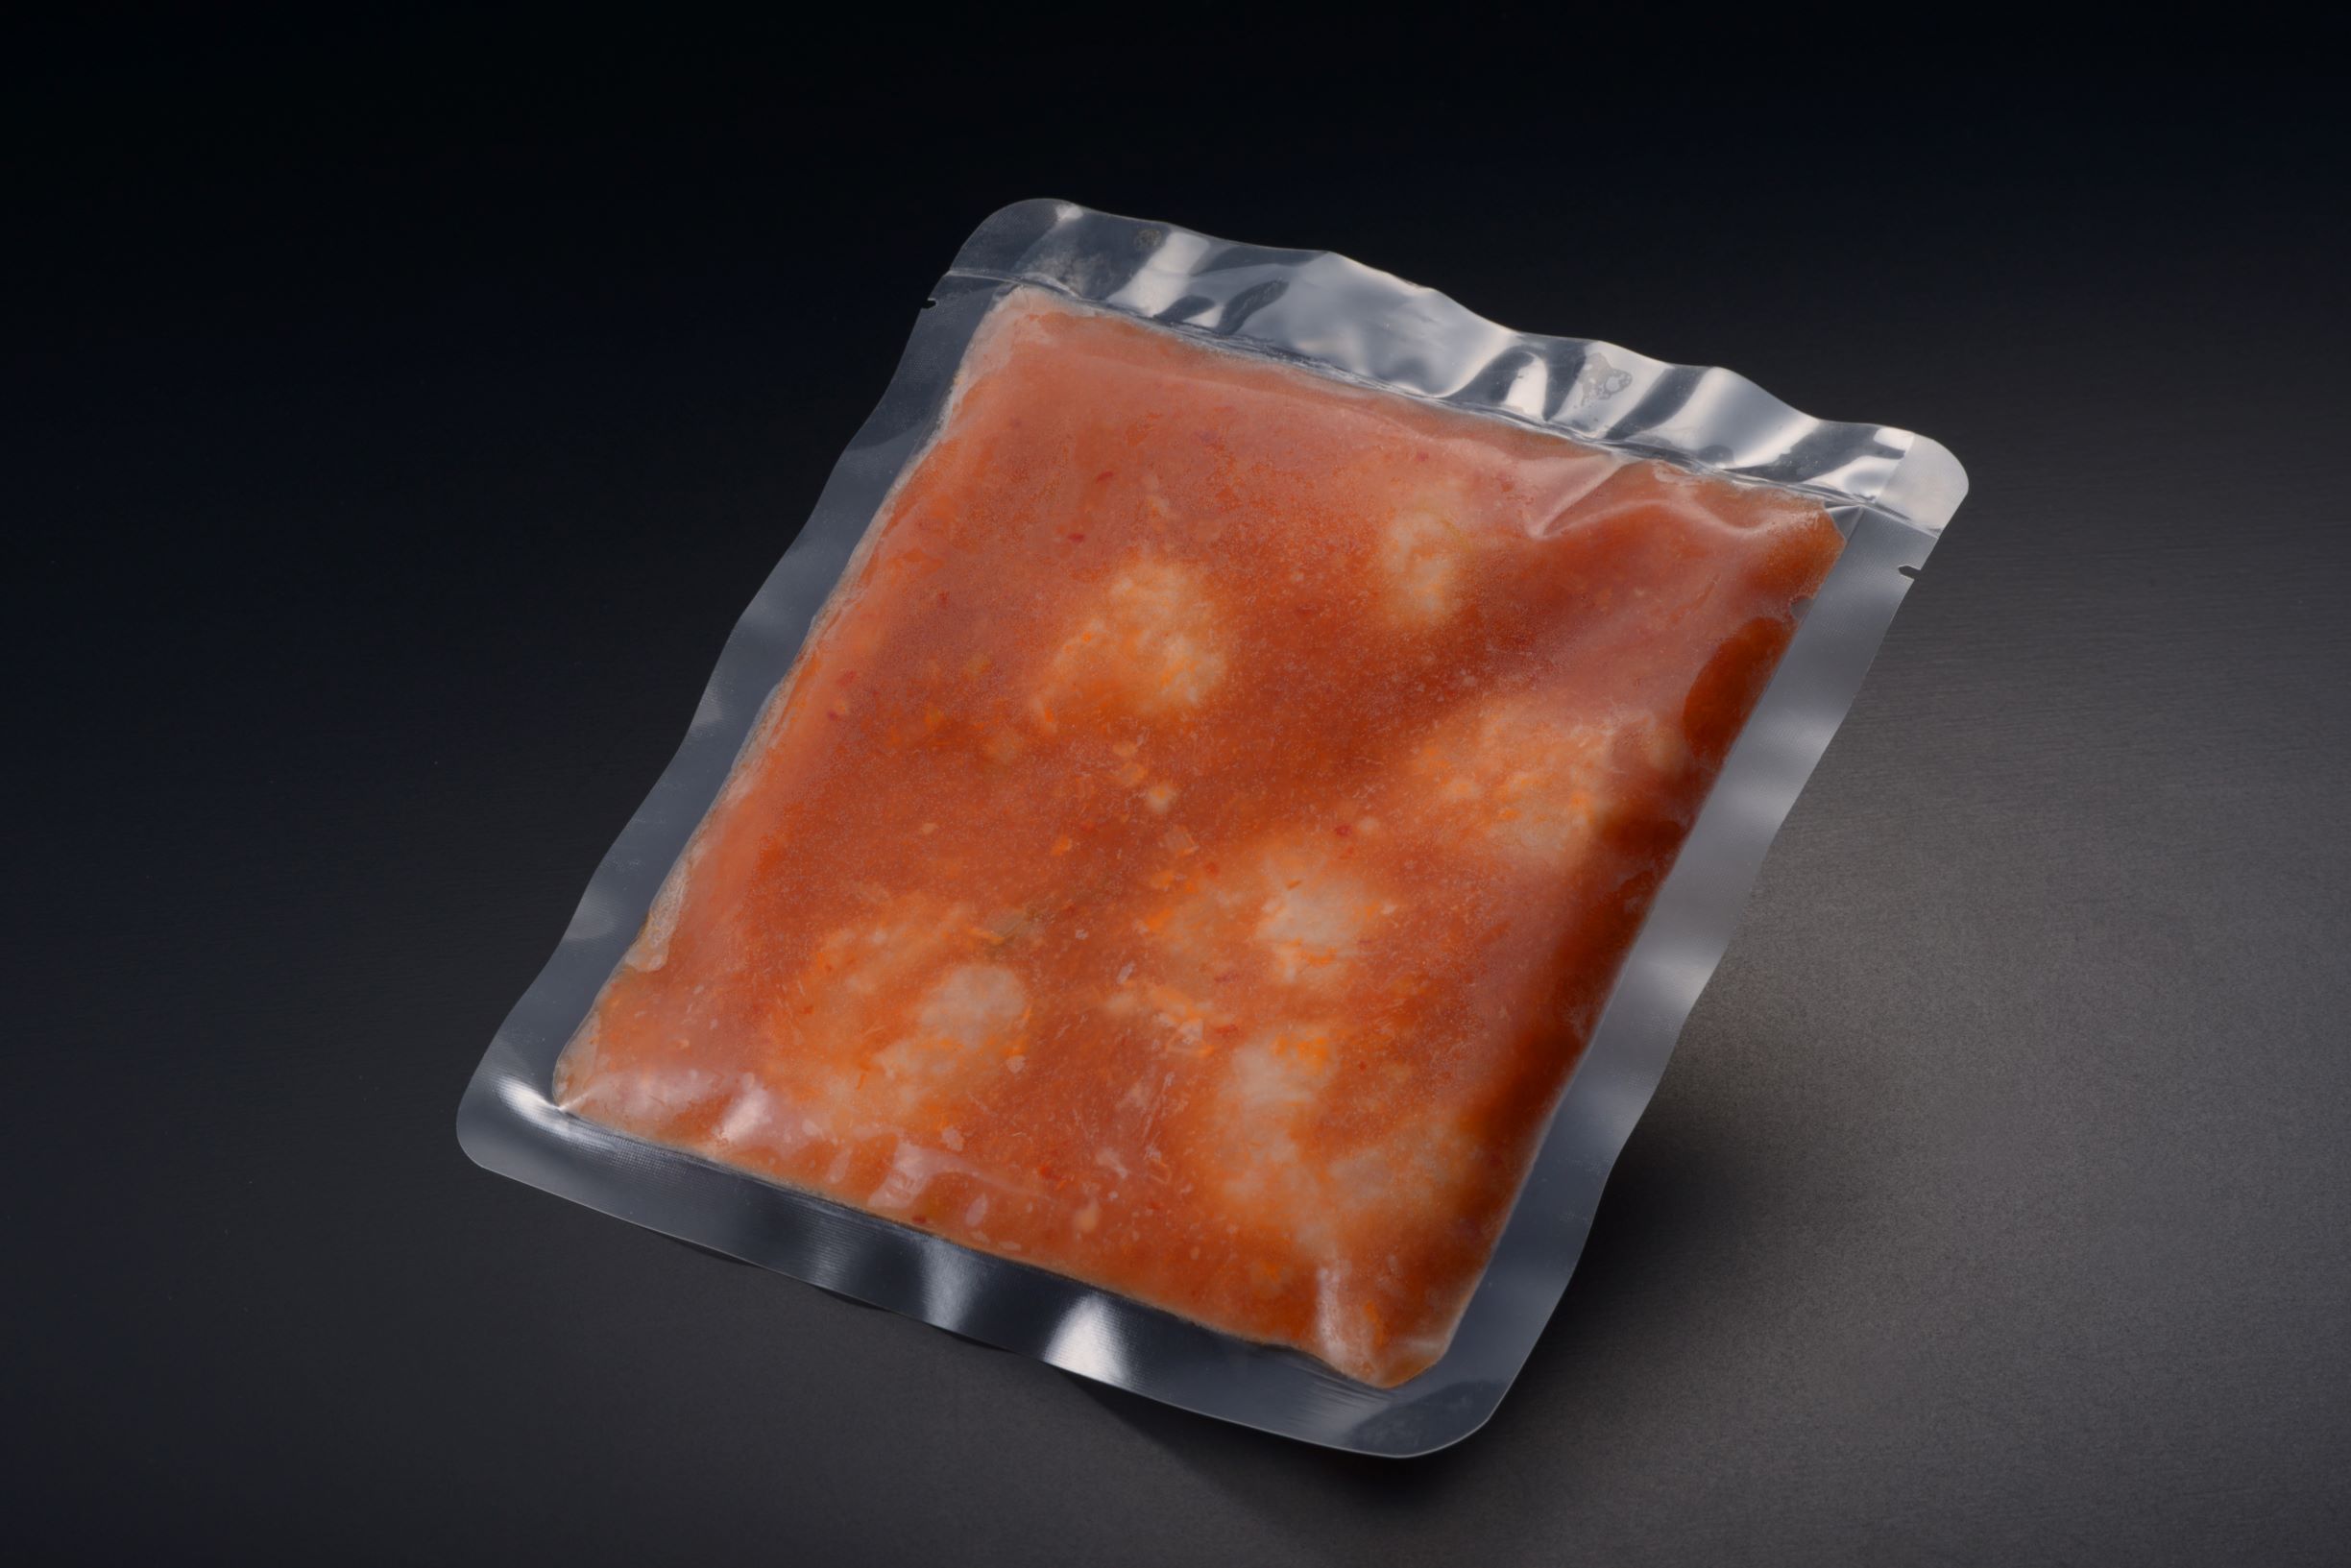 冷凍 エビチリ 各社の冷凍食品の「エビチリ・エビマヨ」を食べ比べてみた感想